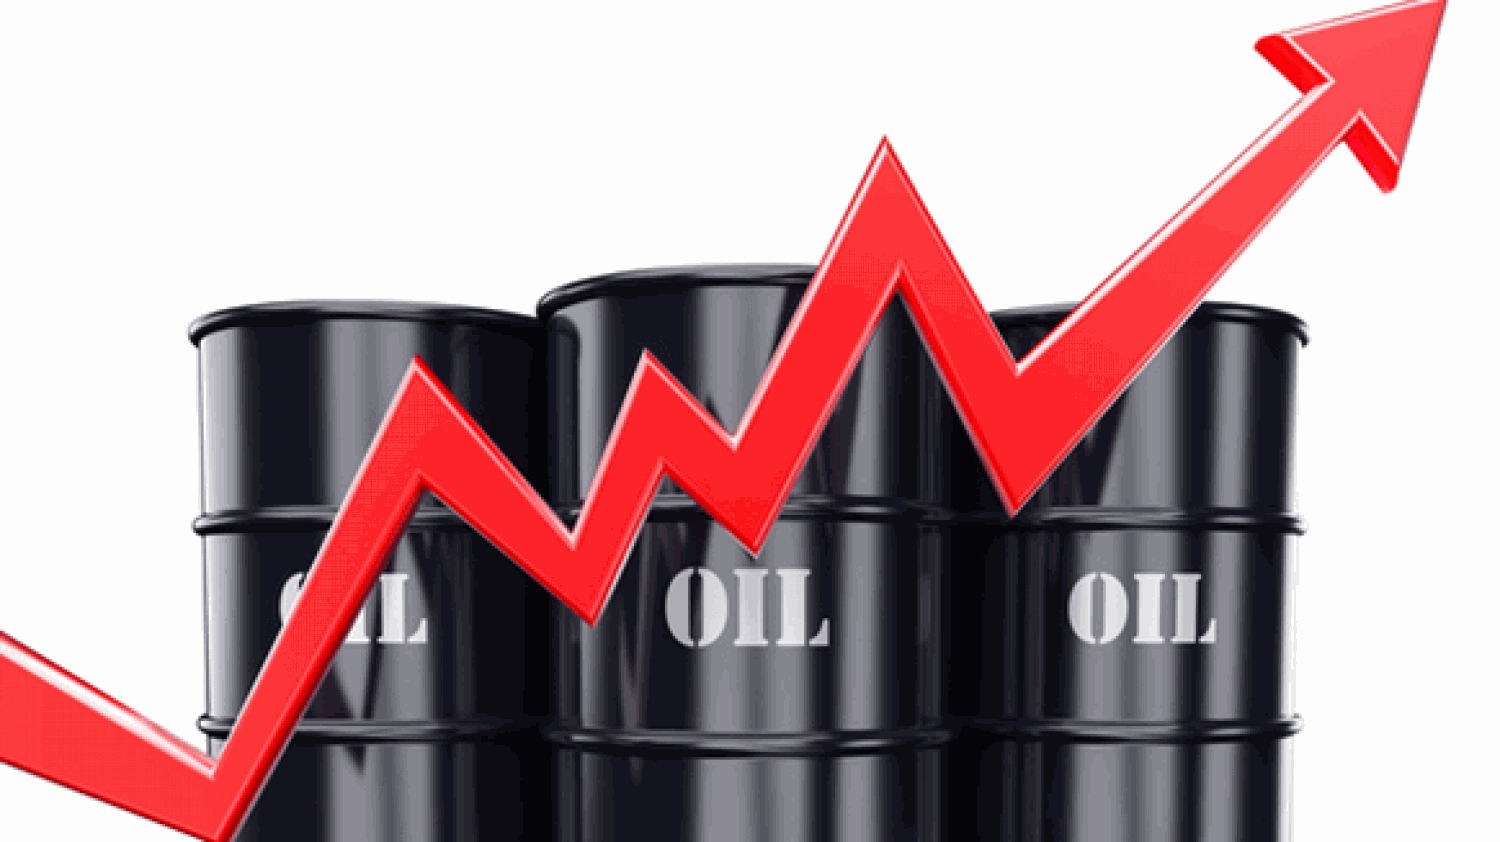   اقتصاديون: أزمة إيران وأسباب أخرى تدفع سعر برميل البترول إلى ١٠٠دولار